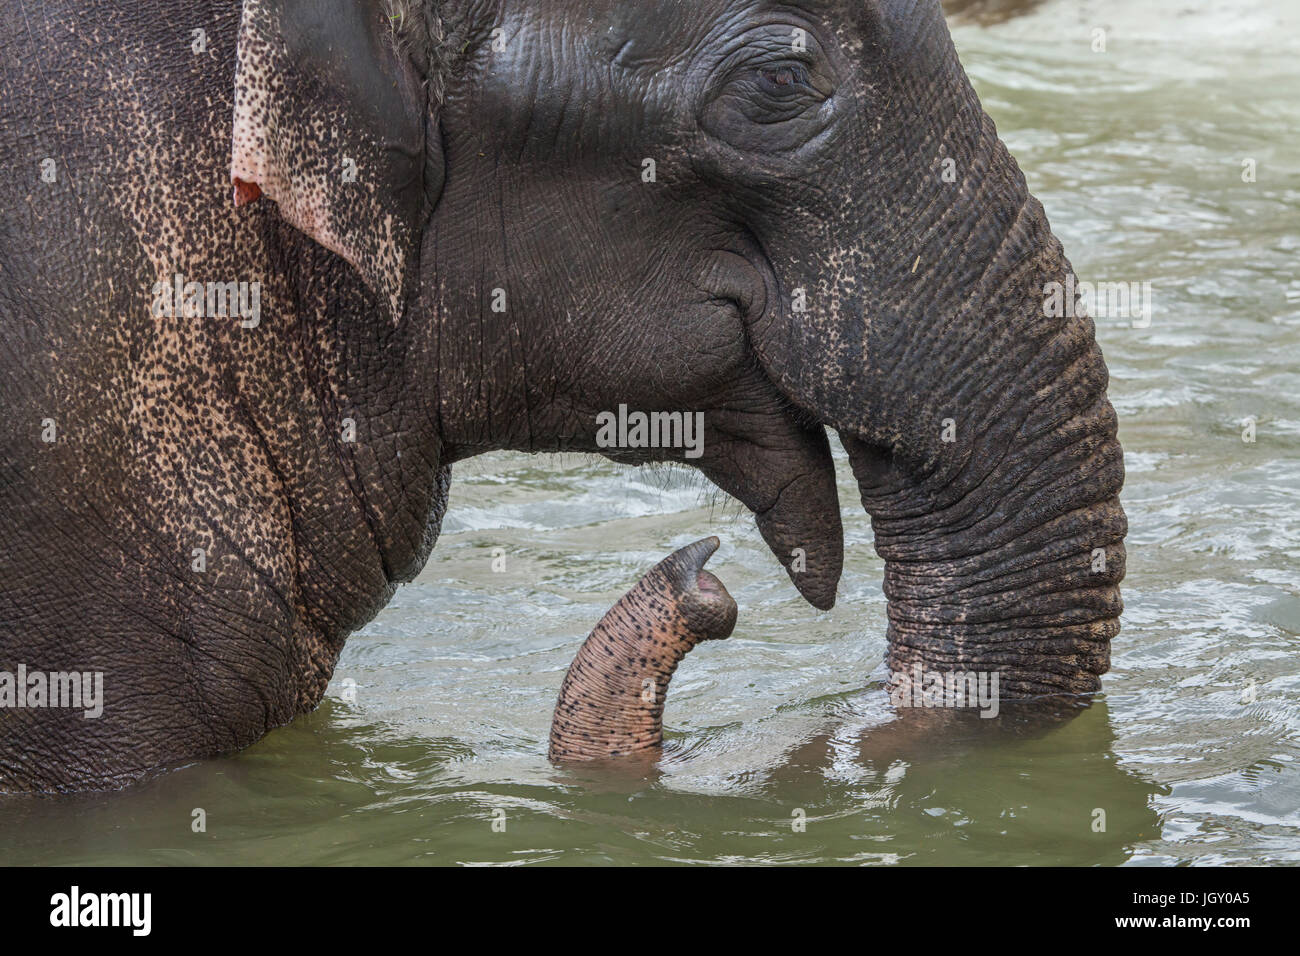 Asian elephant (Elephas maximus) bathing. Stock Photo